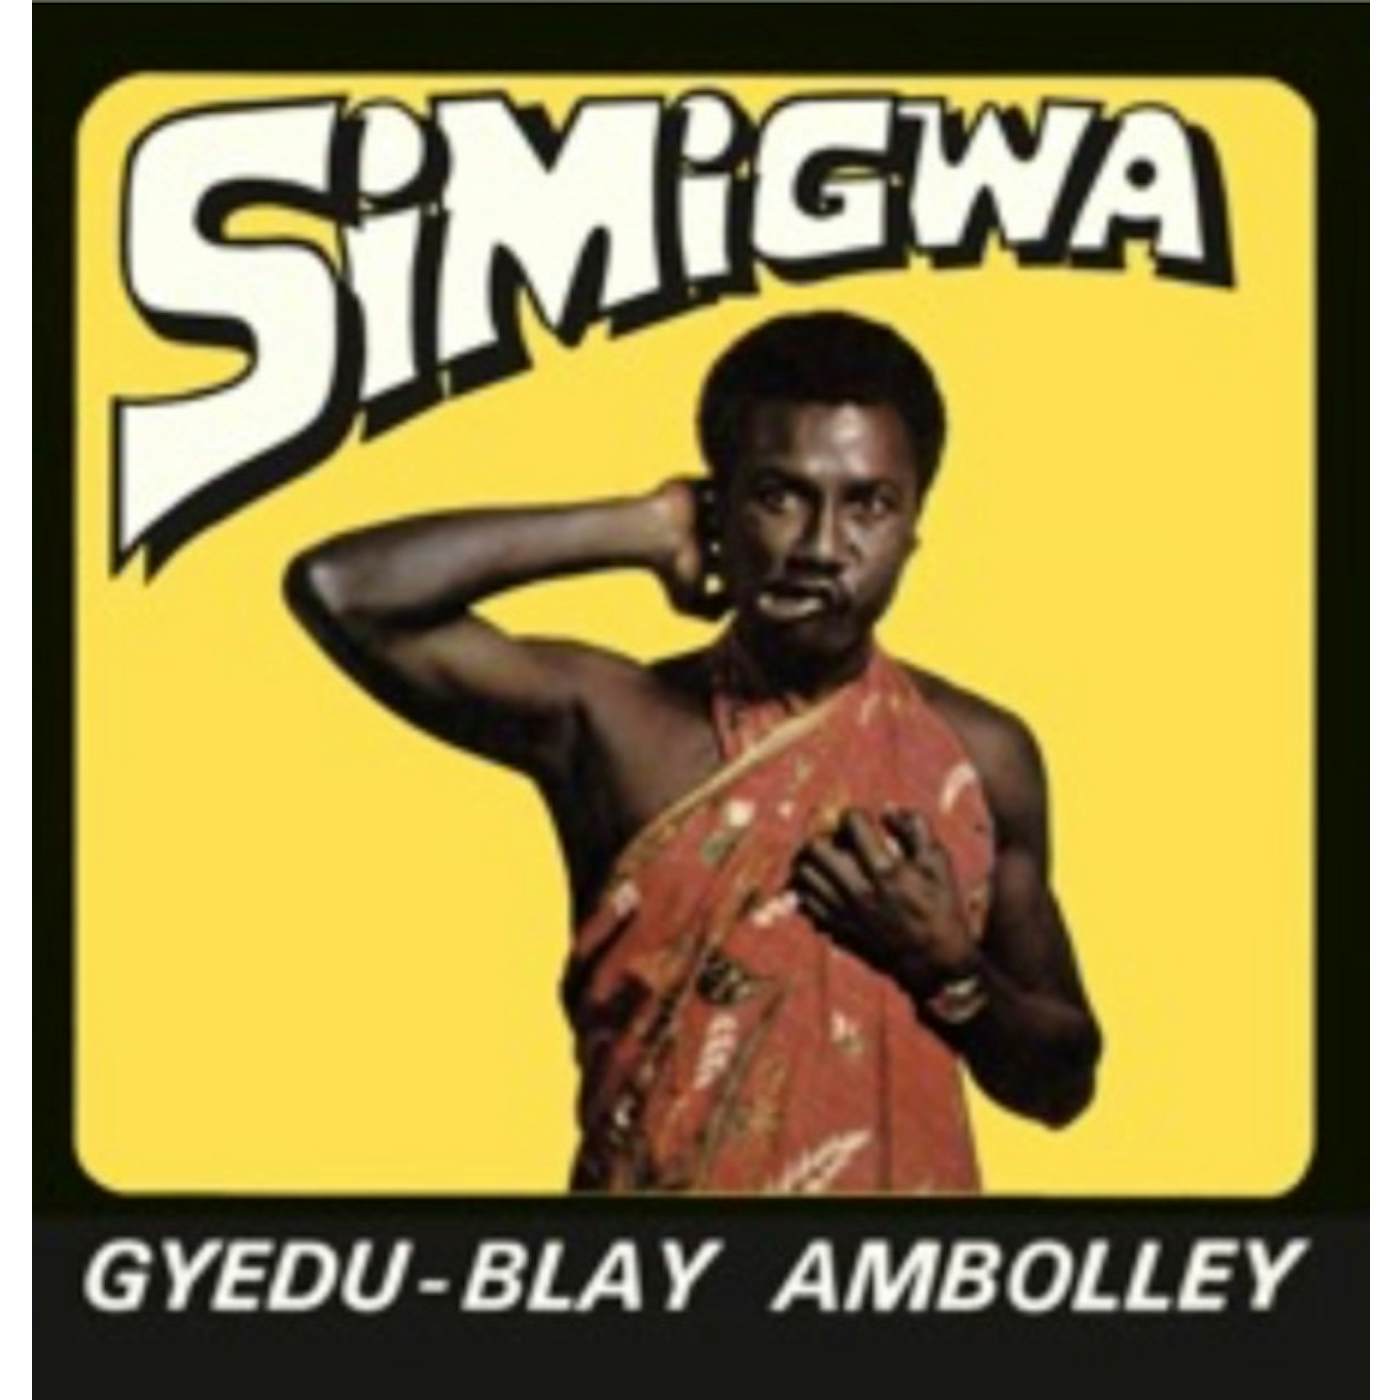 Gyedu-Blay Ambolley SIMIGWA CD